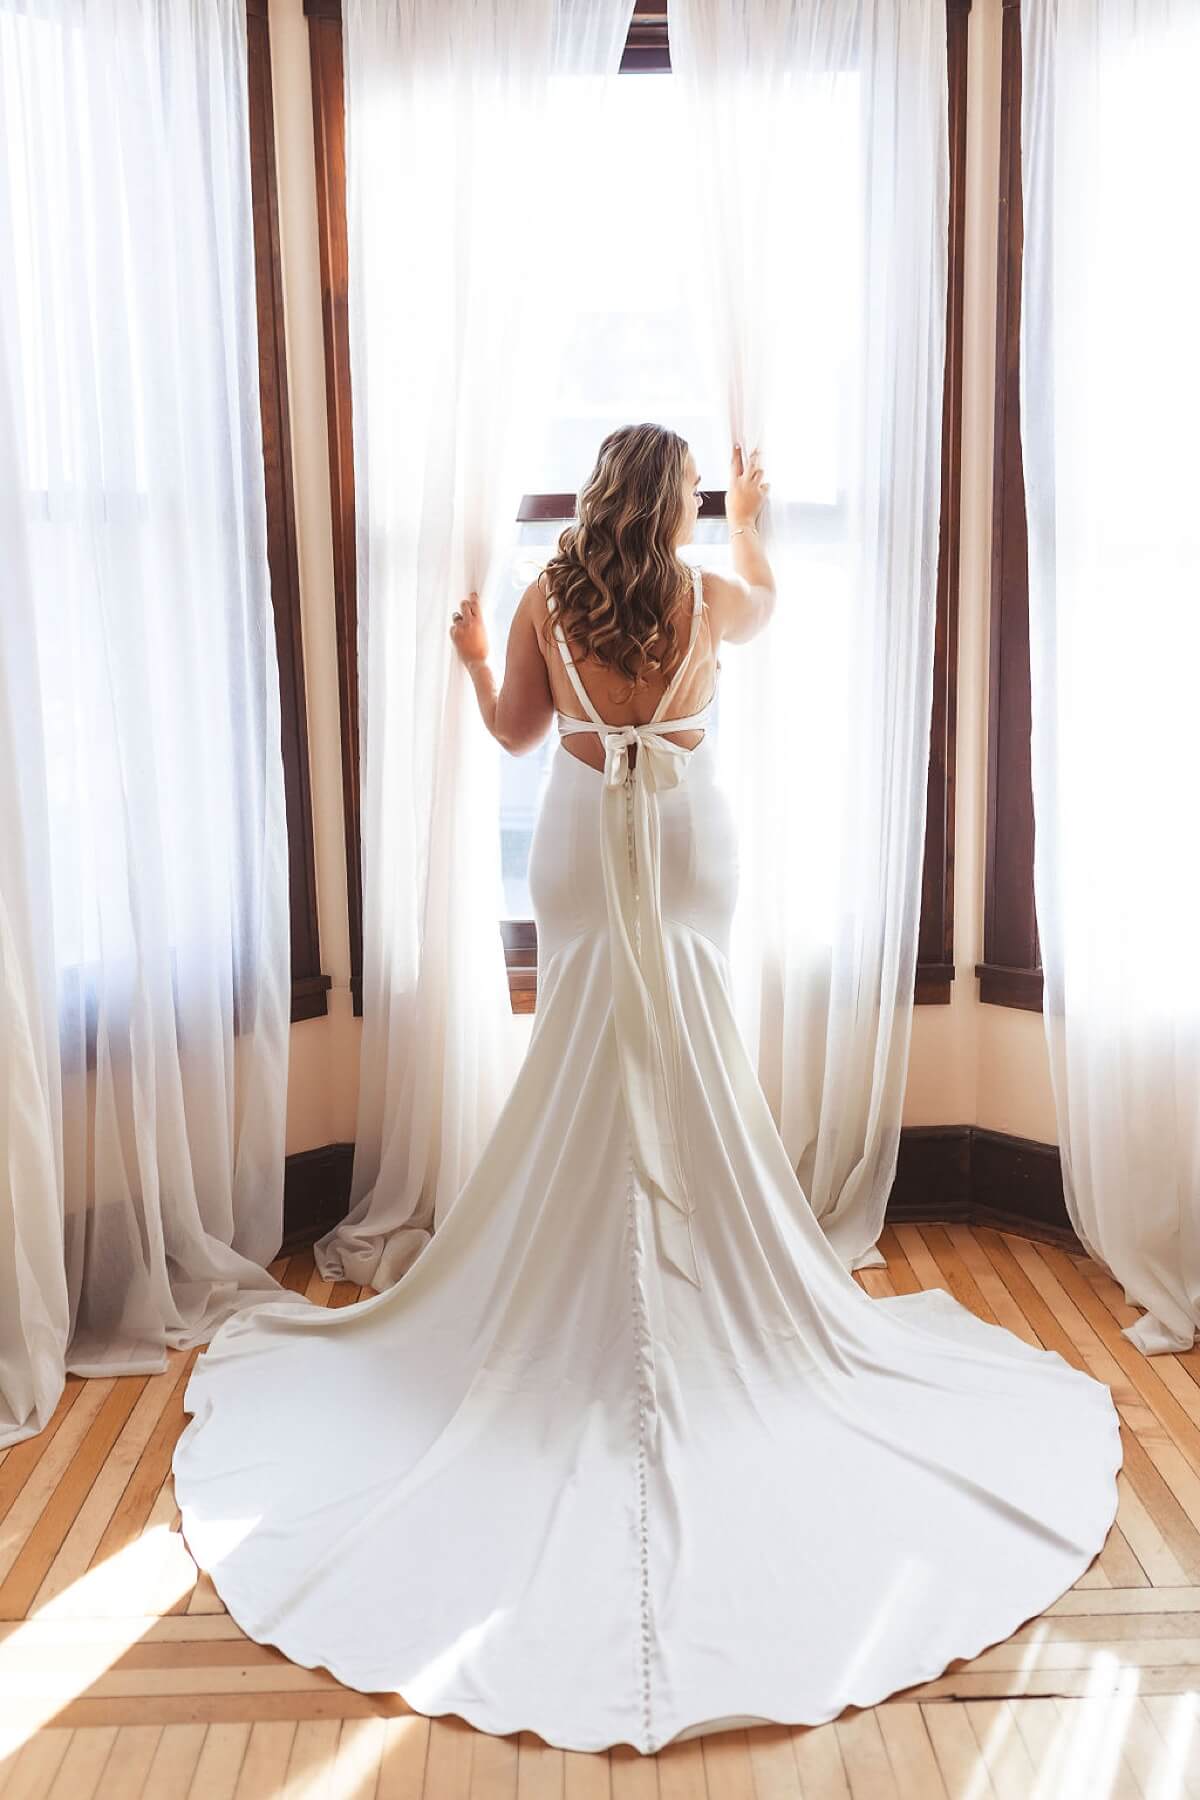 Bride wearing satin wedding dress standing in window pushing curtains aside